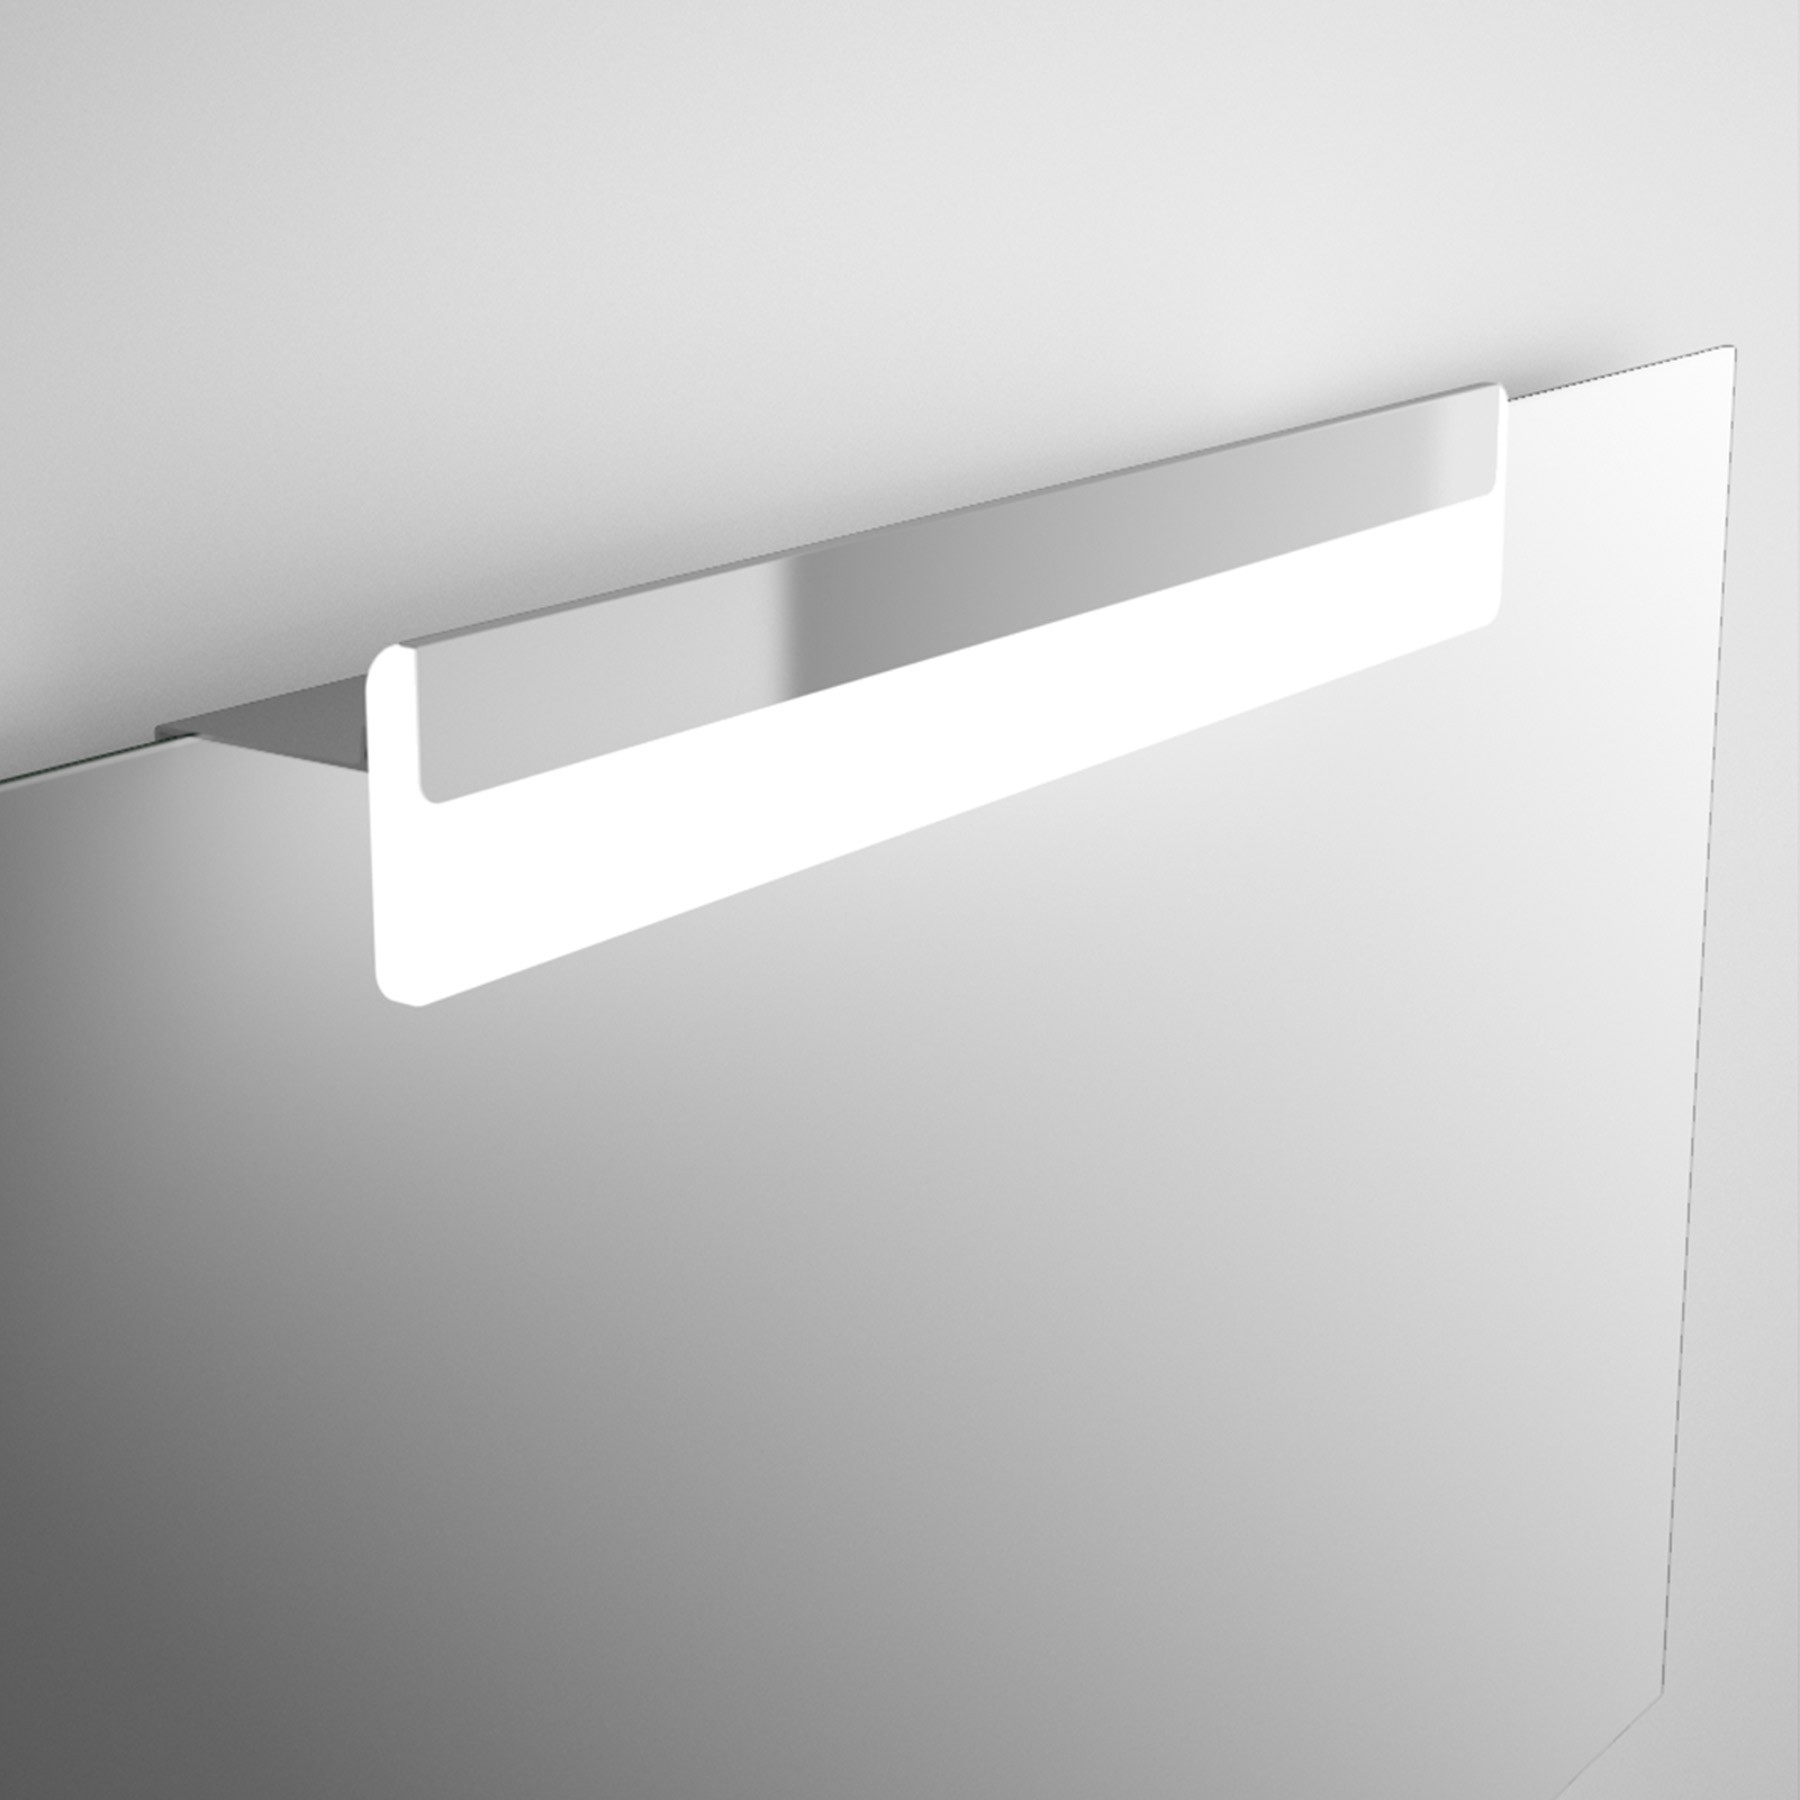 Applique de salle de bains Gamme PRO SALGAR ESTORIL 500 luminaire led IP44 (6W.) fixation à mur/cadre500 x 76 x 79 - Réf:20728